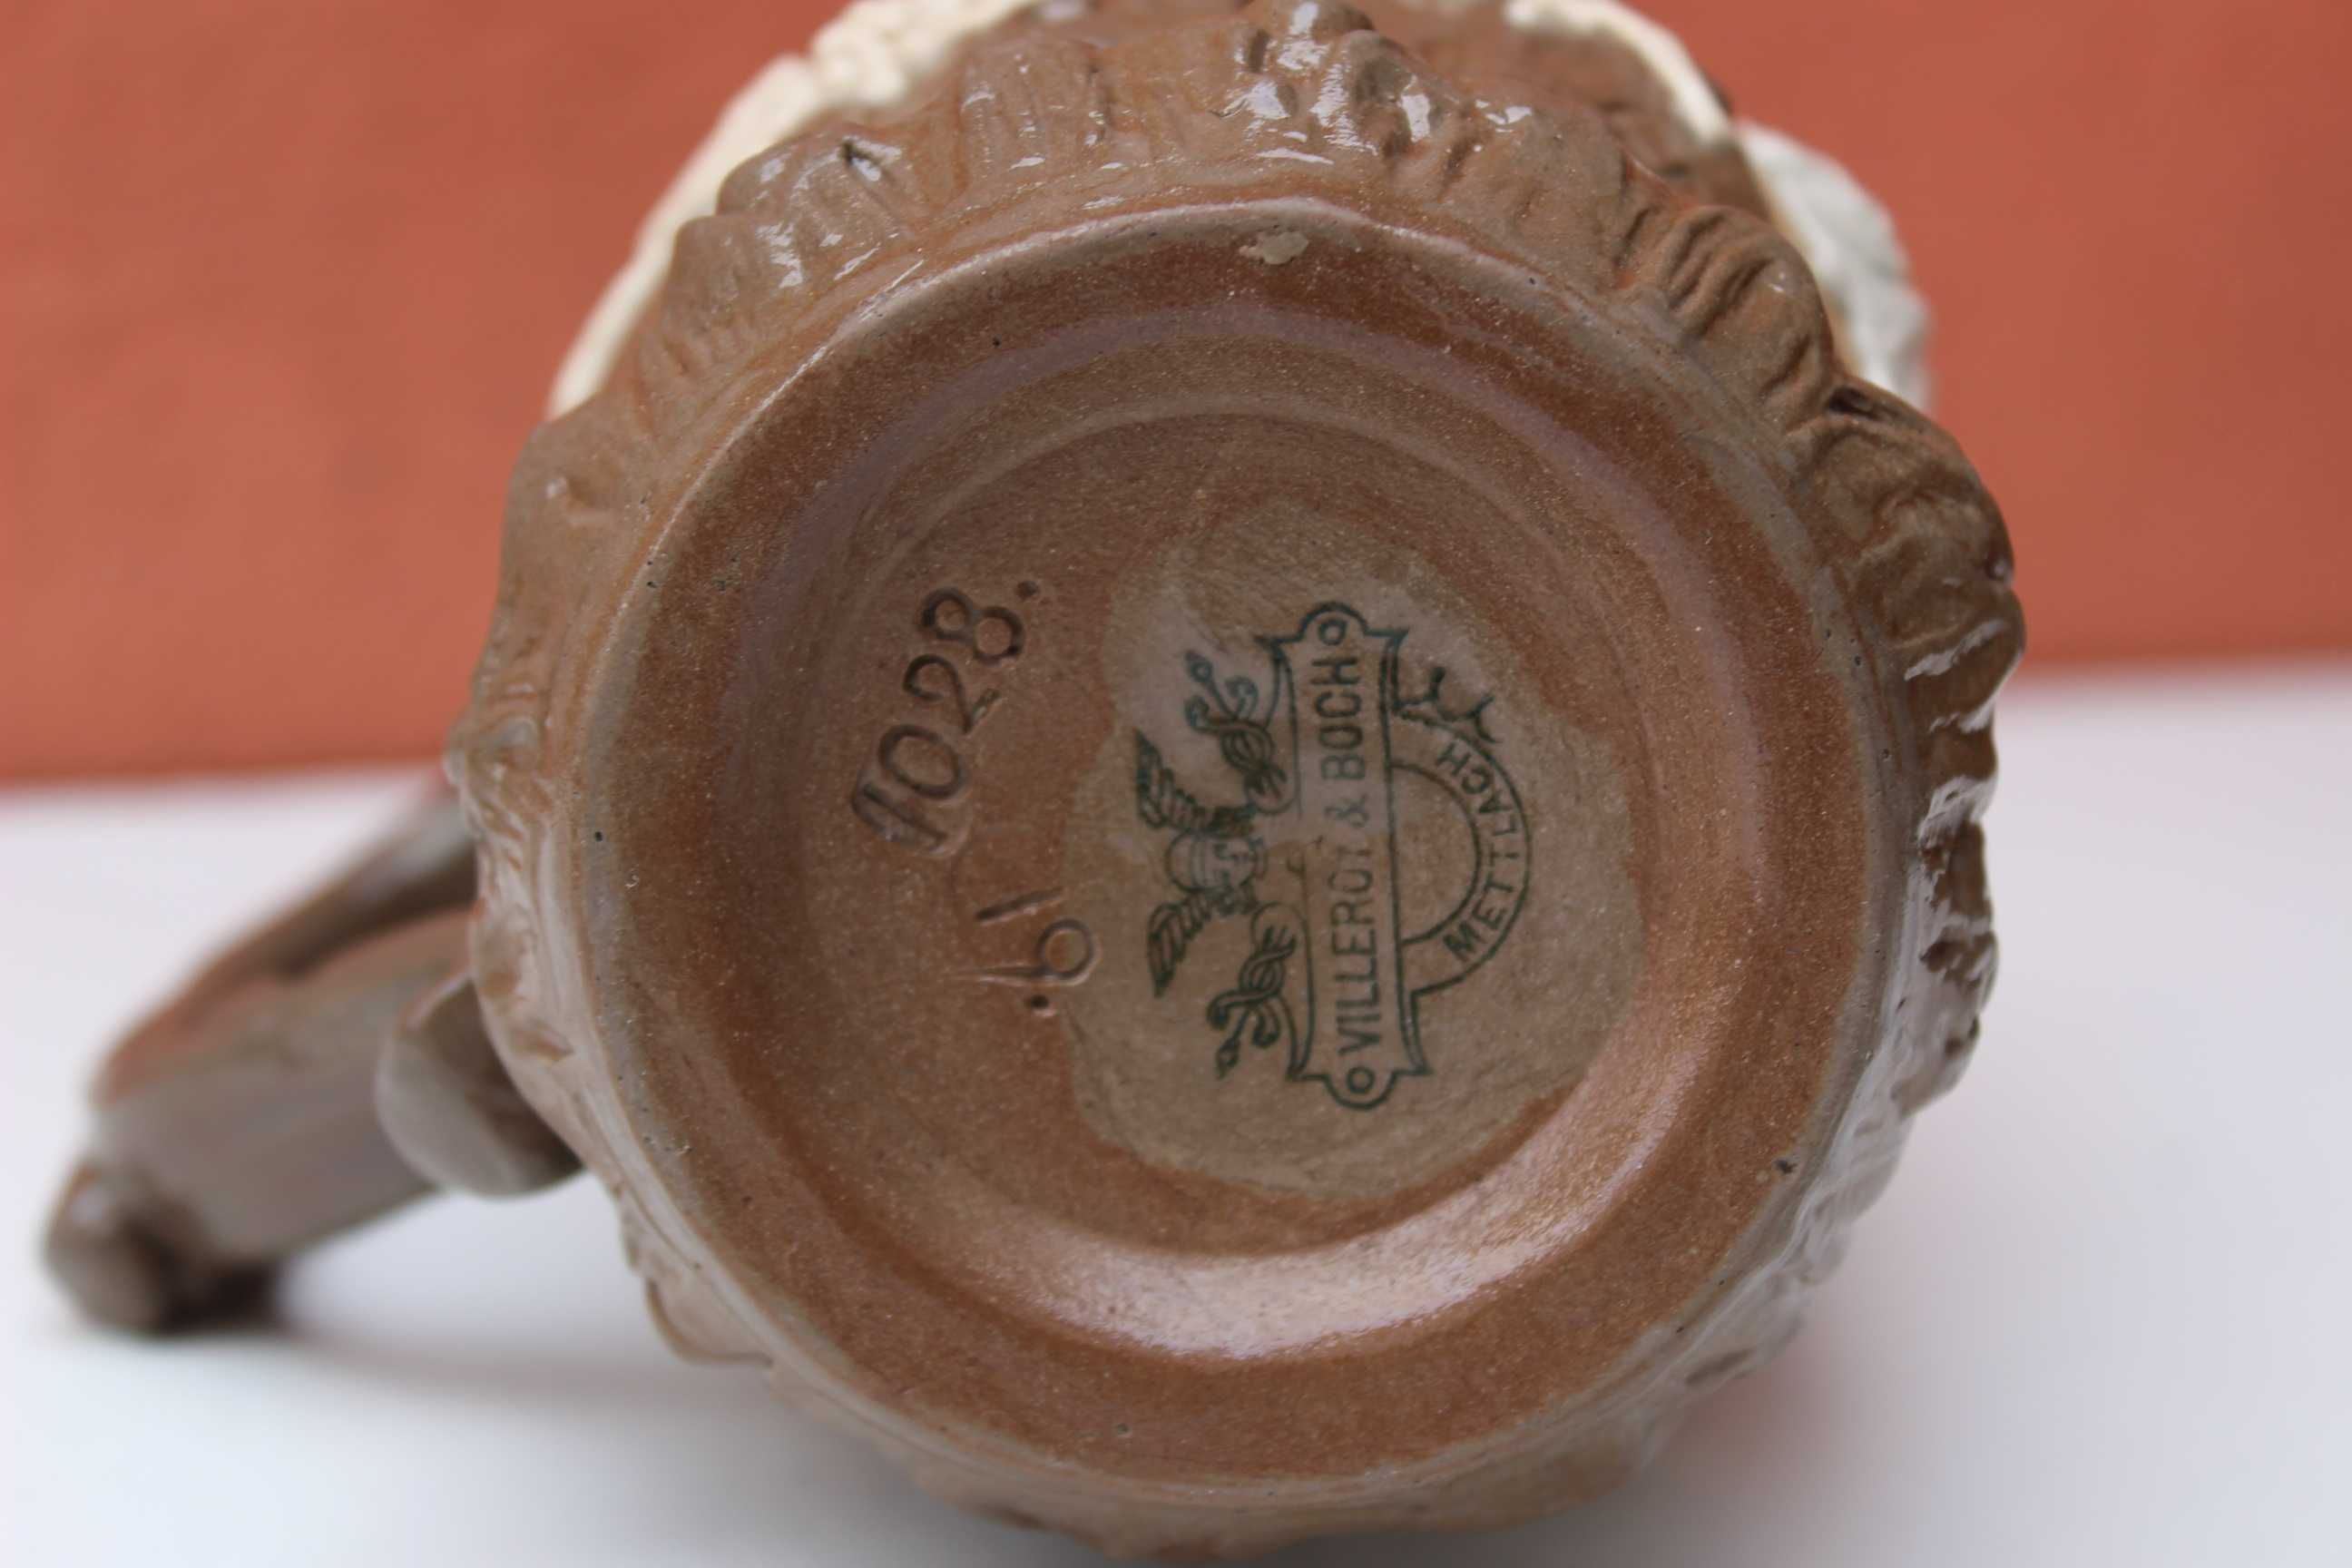 Halba bere ceramica VILLEROY & BOCH, Mettlach, secol 19